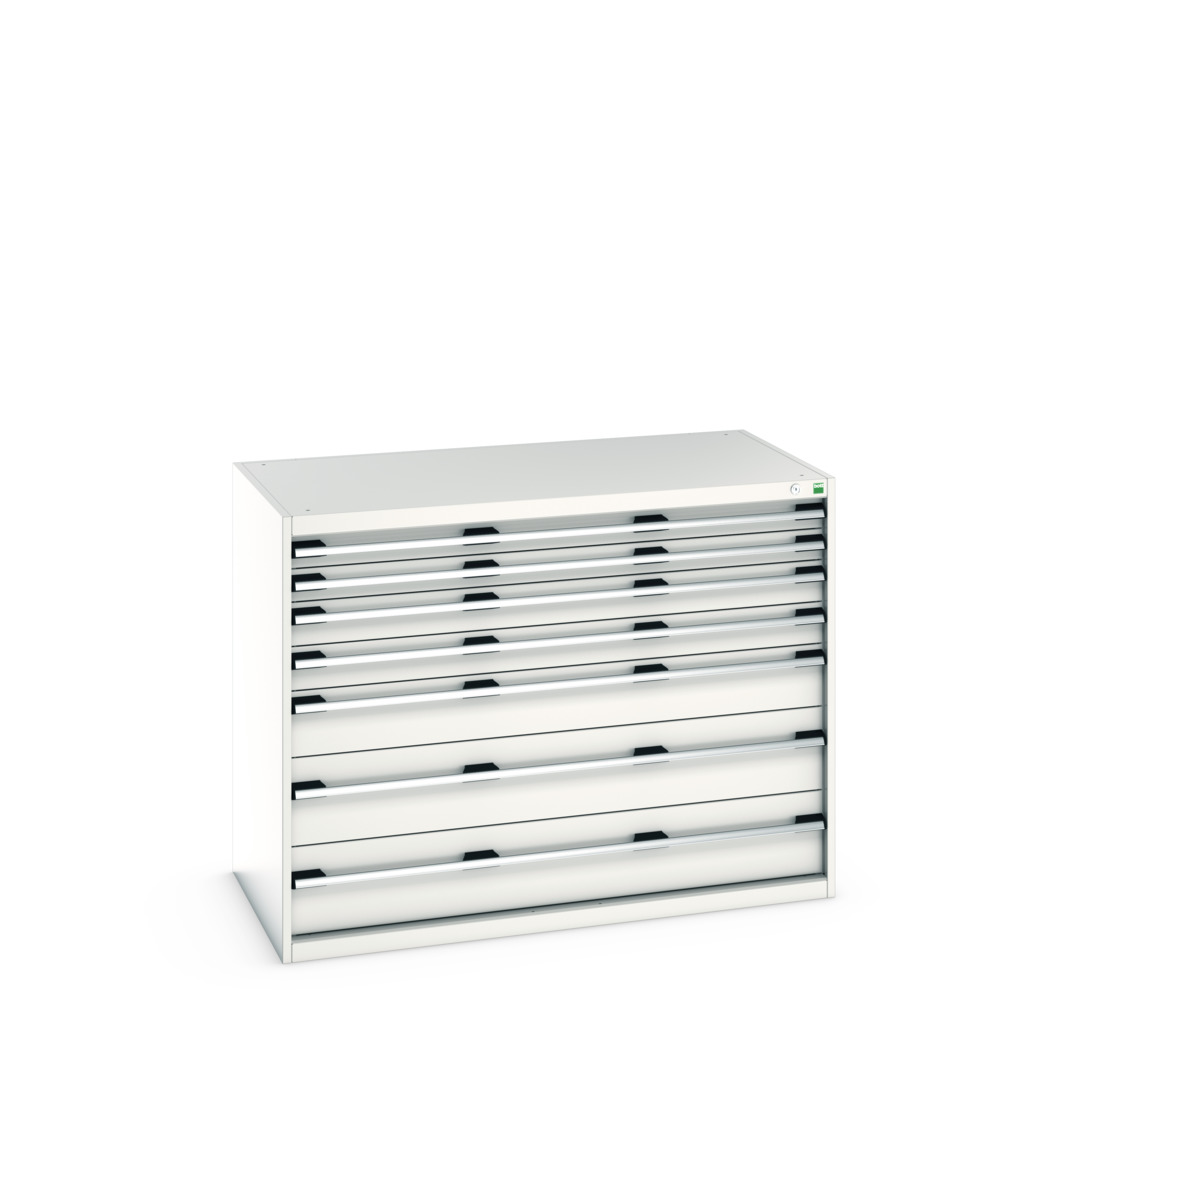 40030015.16V - cubio drawer cabinet